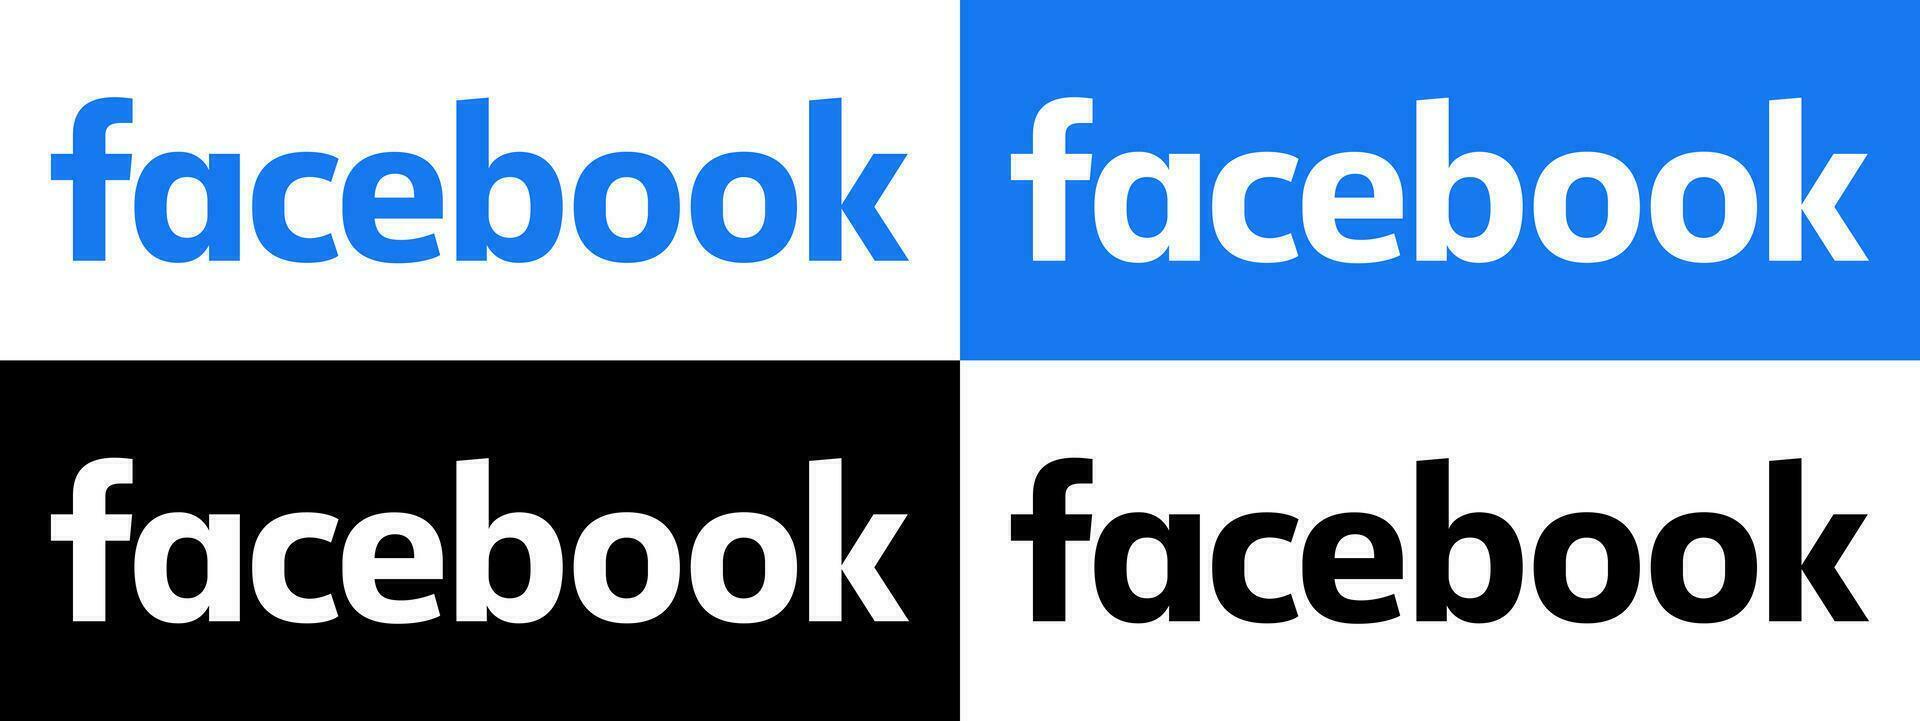 Facebook Text Logo - - Vektor einstellen Sammlung - - schwarz Silhouette - - neueste Blau Farbe Schriftart - - isoliert. Original Facebook Name Art zum Netz Buchseite, Handy, Mobiltelefon App oder drucken Materialien.